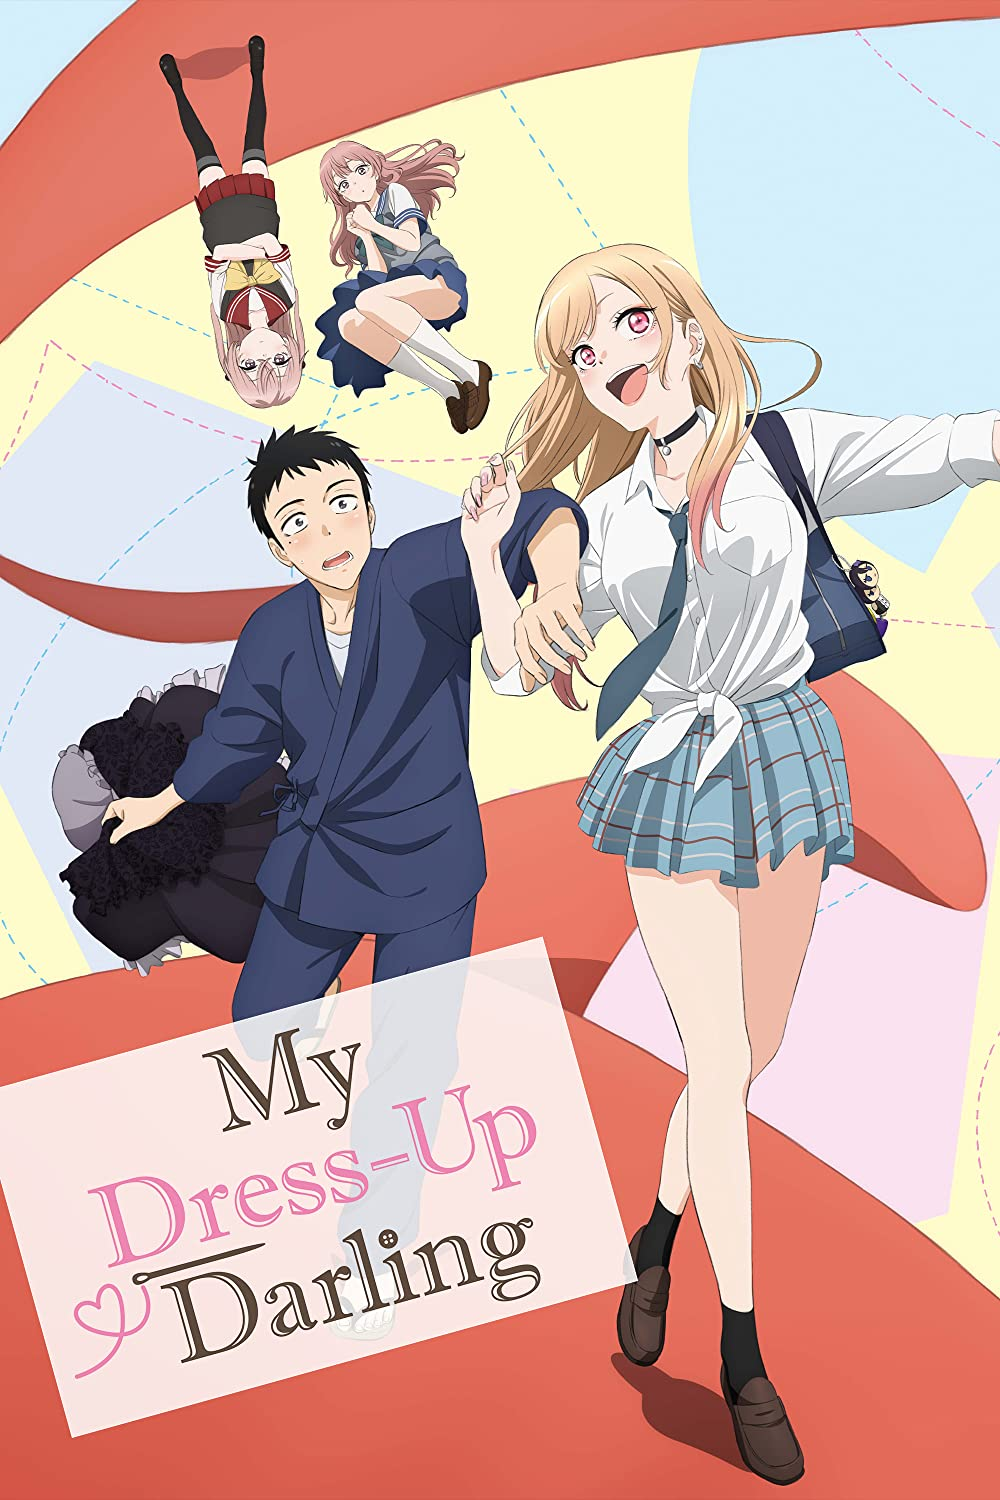 My Dress Up Darling izlemeye değer bir anime mi?